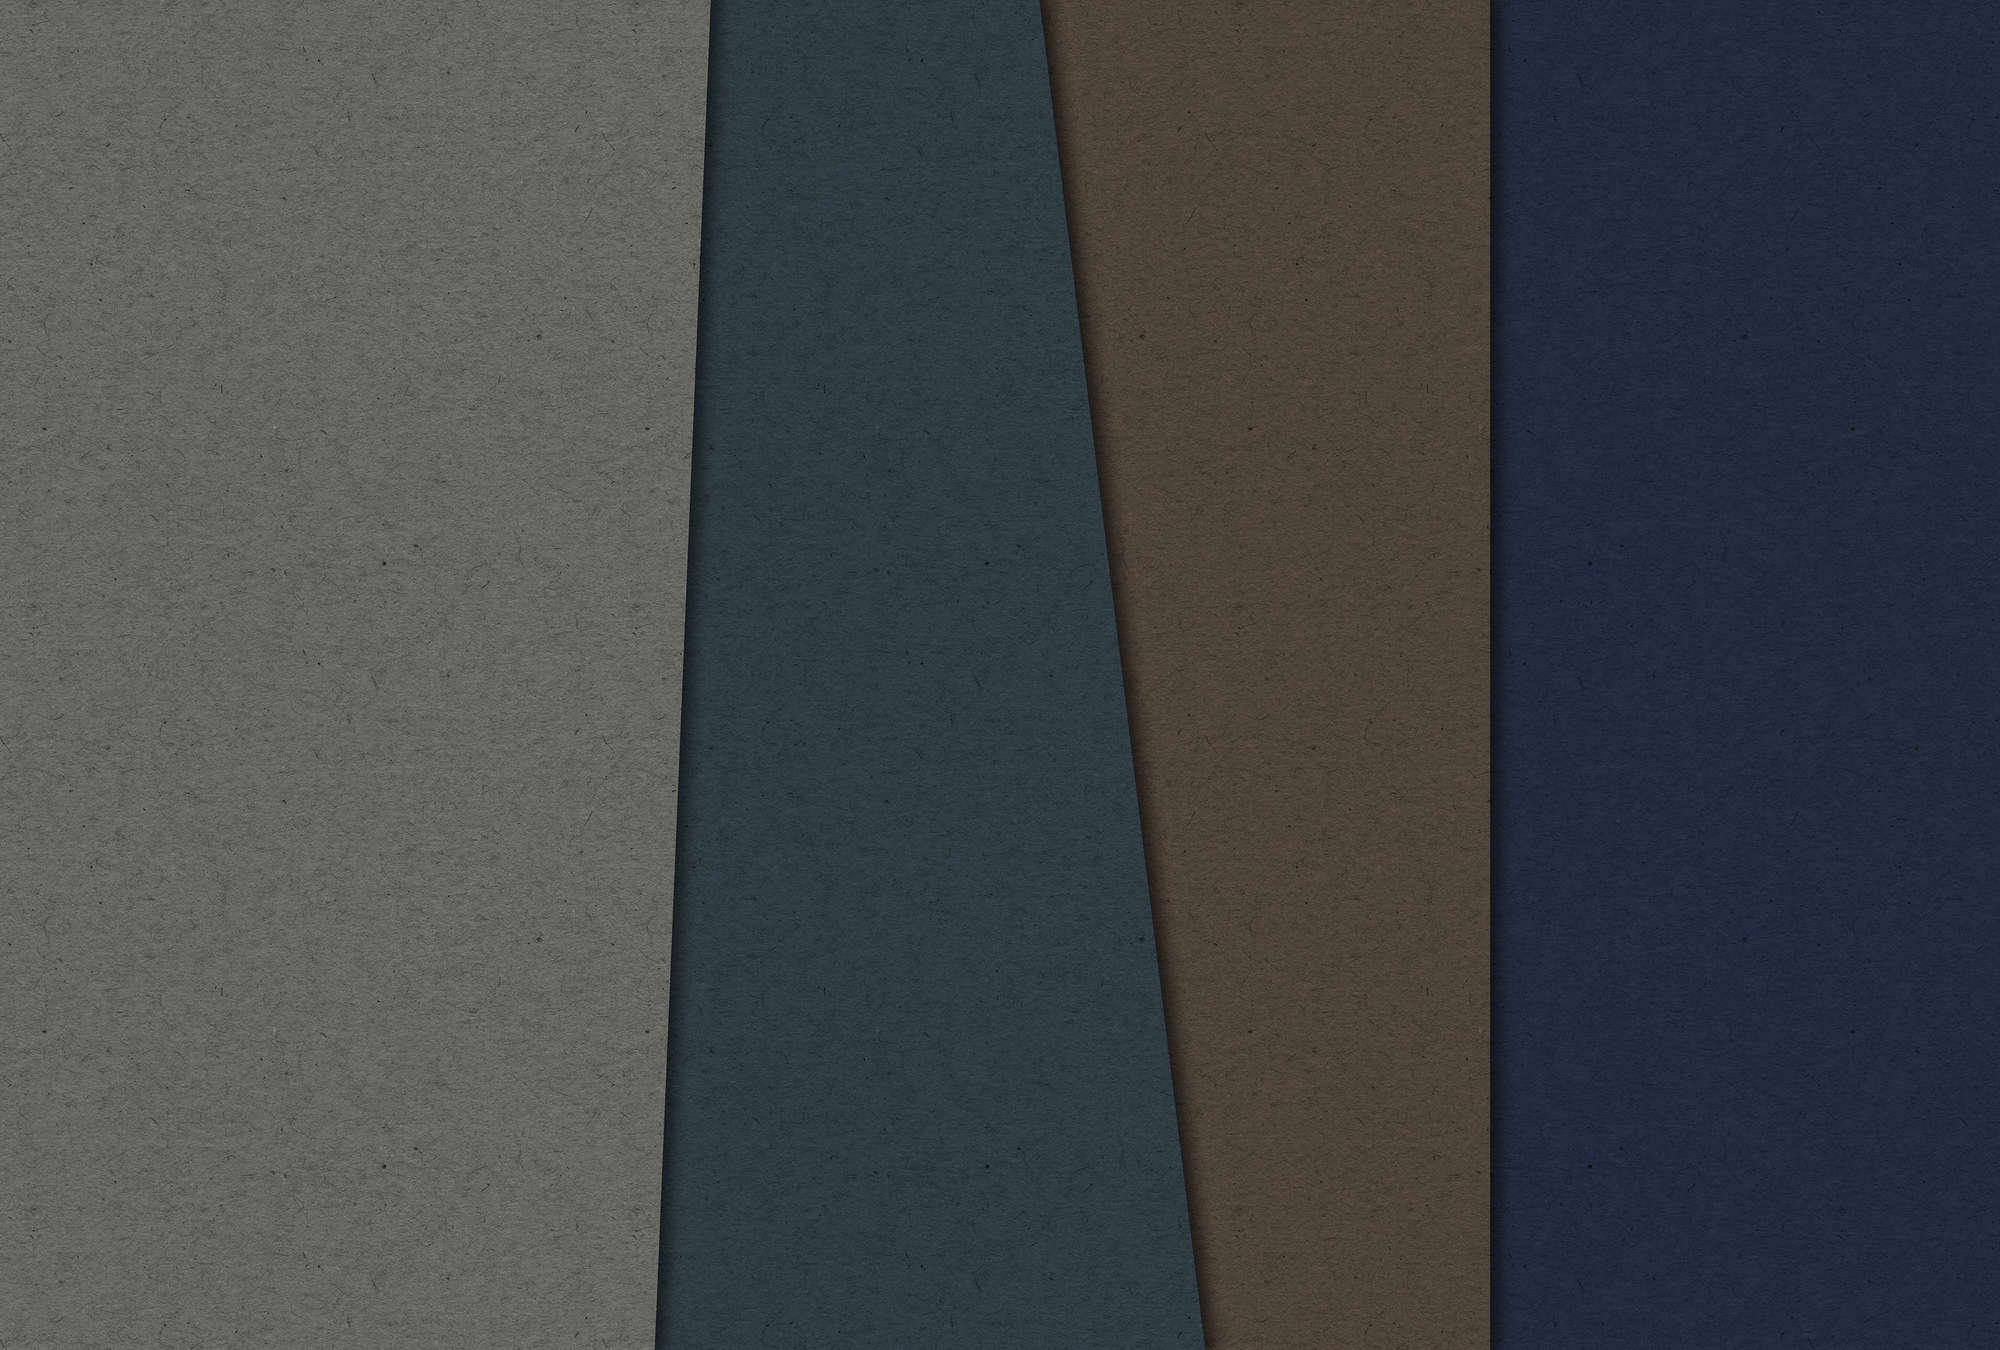             Layered Cardboard 2 - Fototapete in Pappe Struktur mit dunklen Farbfeldern – Blau, Braun | Premium Glattvlies
        